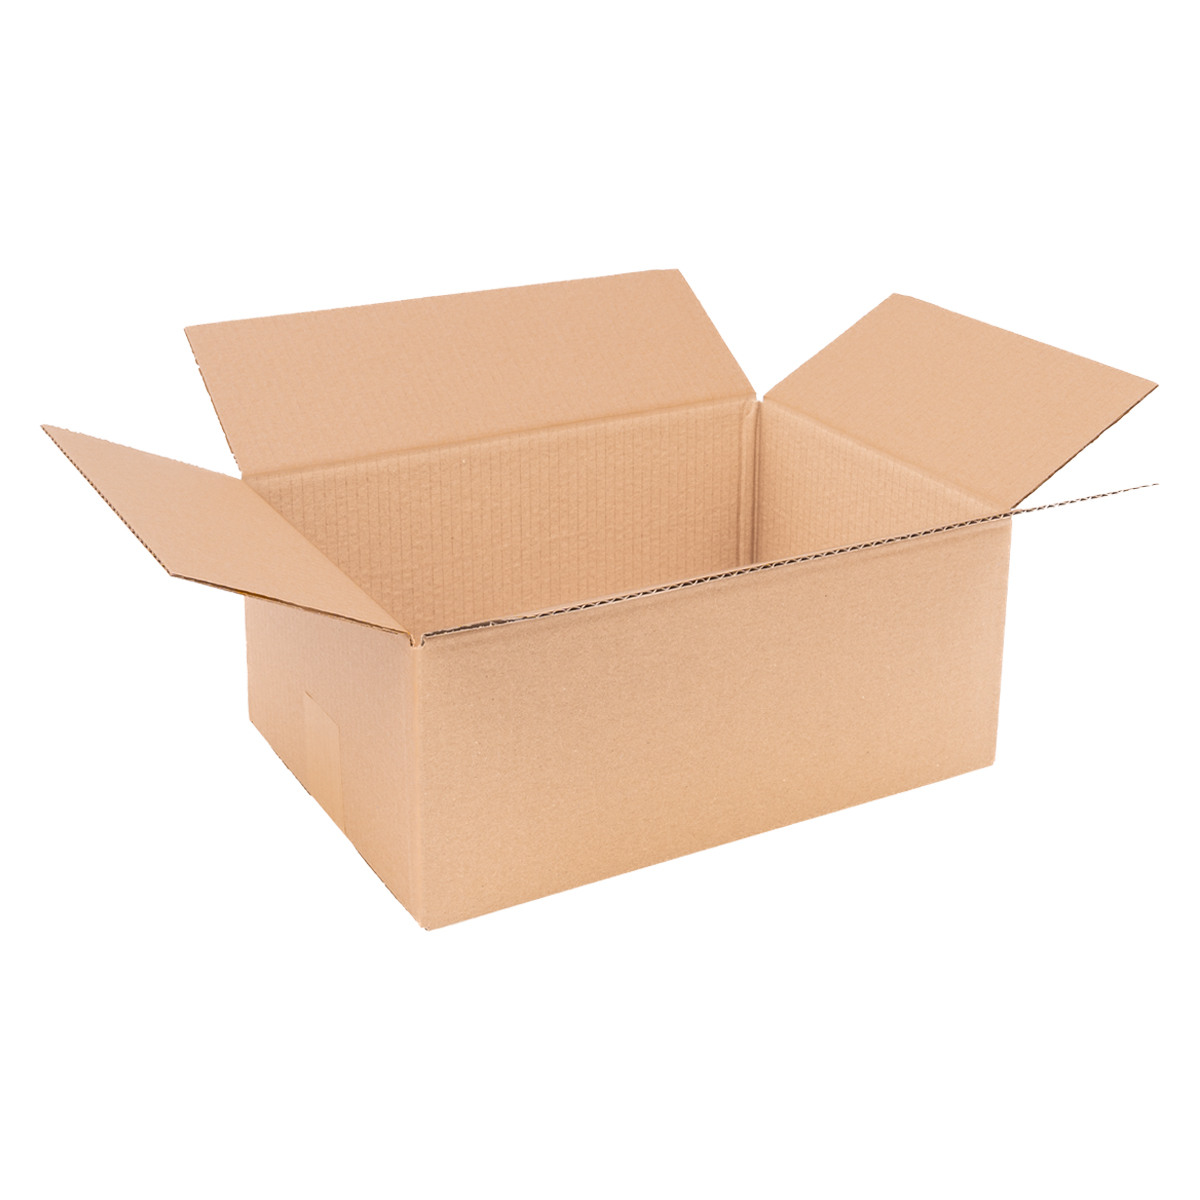 Cardboard box single wall 350x240x150 mm - KK 70